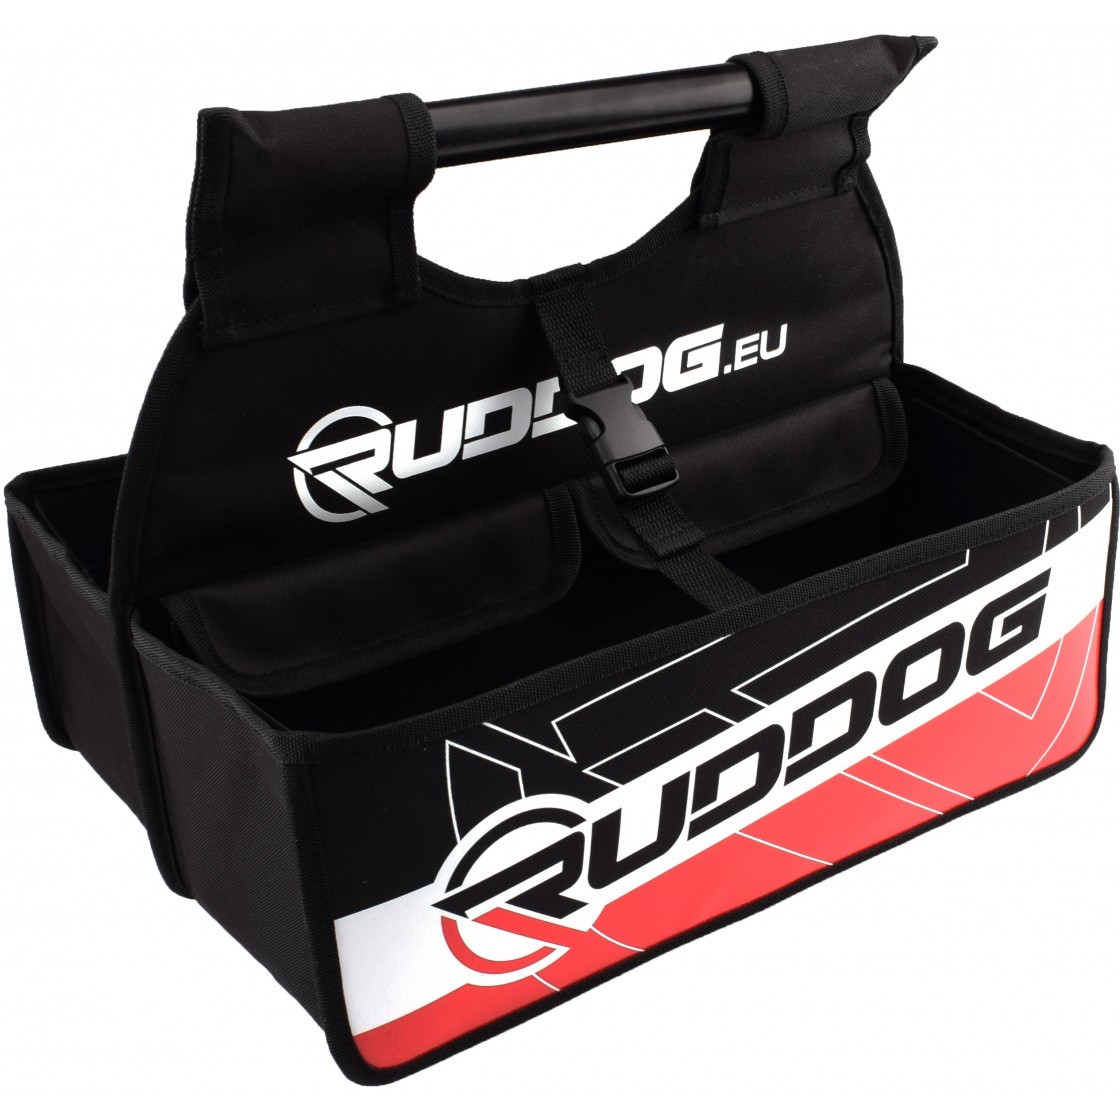 Ruddog Products 0629 - Nitro Pit Caddy Bag